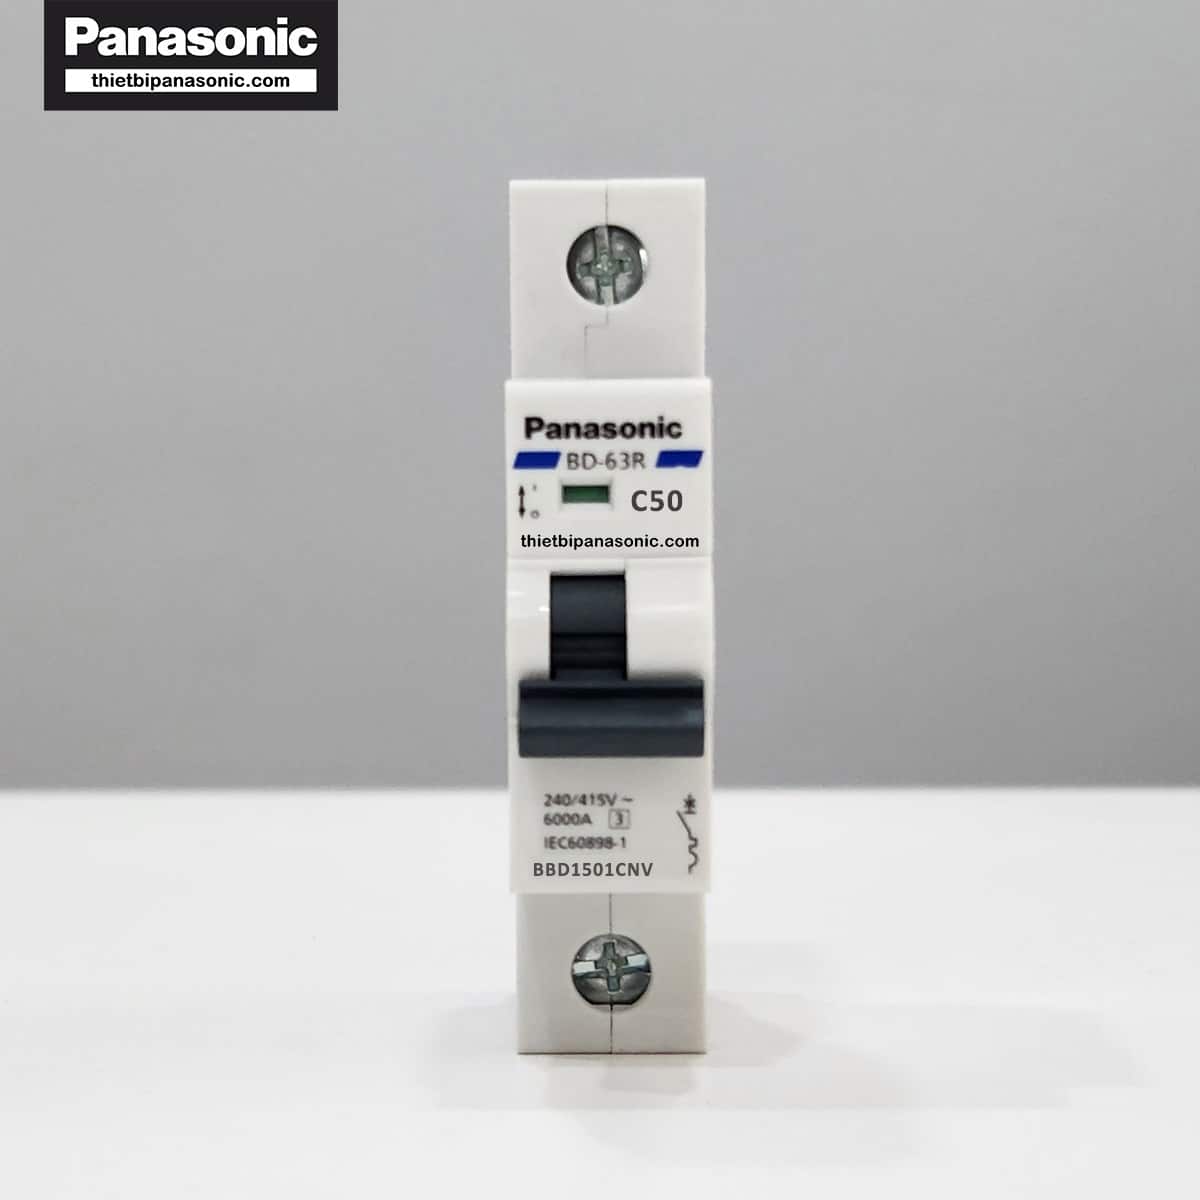 MCB 1P 50A 6kA Panasonic ở trạng thái tắt (dấu hiệu nhận biết màu xanh)